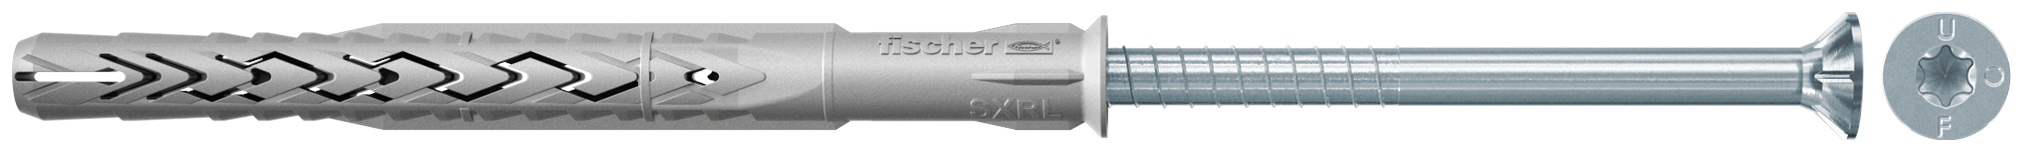 fischer Tasselli prolungati SXRL 8x80 T (1 Pz.) Tassello prolungato in nylon con marcatura CE con vite premontata T.S.P. impronta torx.